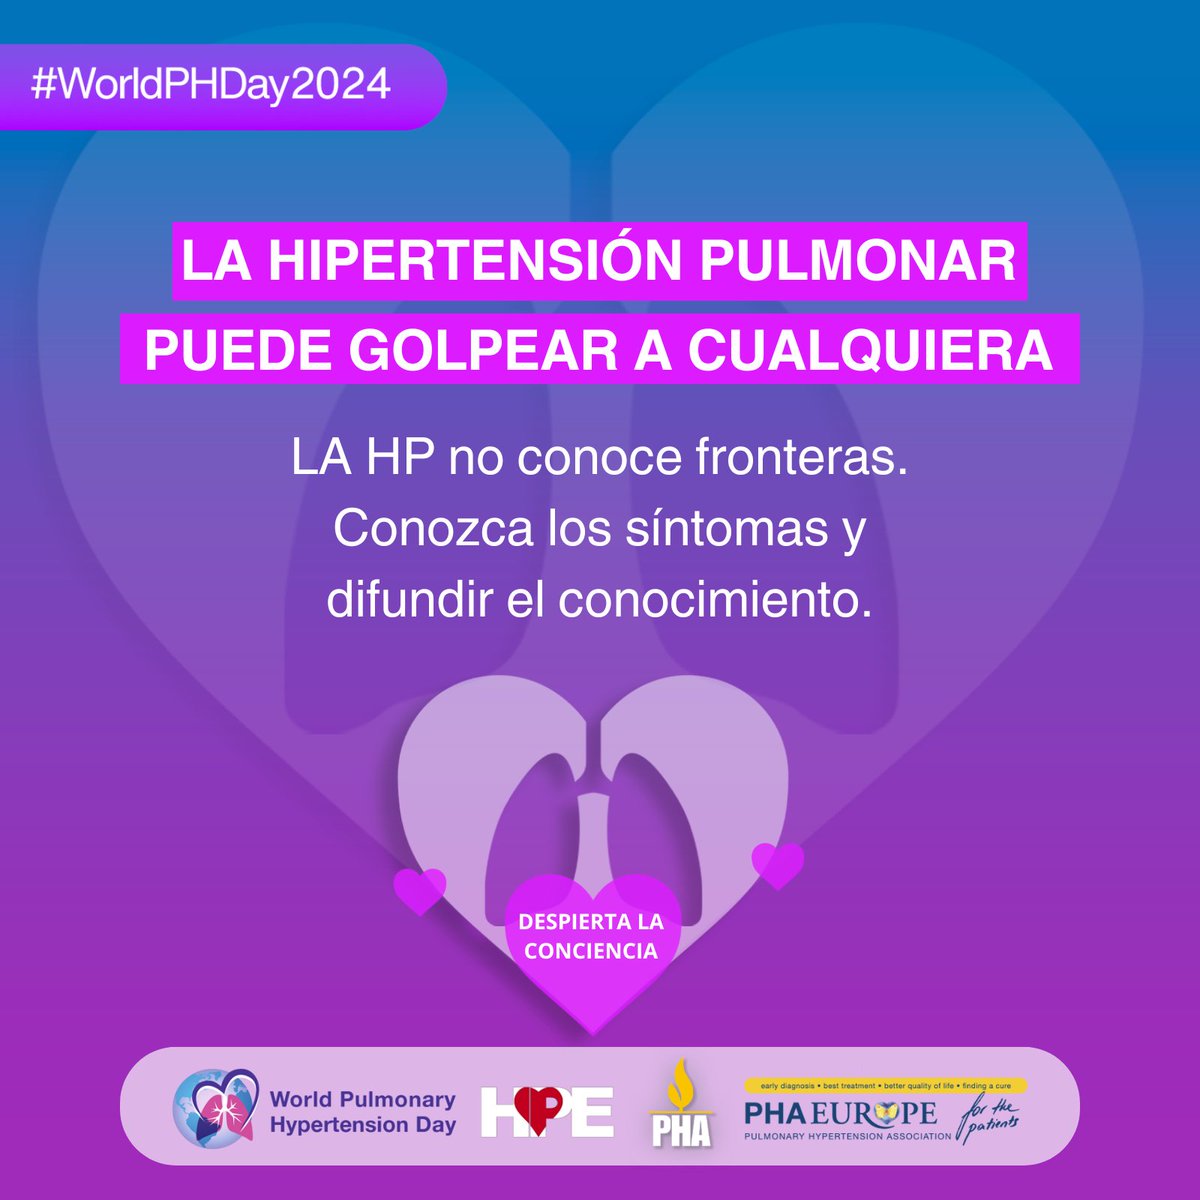 La hipertensión pulmonar no discrimina: puede afectar a cualquier persona, independientemente de su edad, sexo, raza u origen. 

worldphday.org

#WorldPHDay2024 #WPHD #HipertensiónPulmonar #hpe #PHAEurope